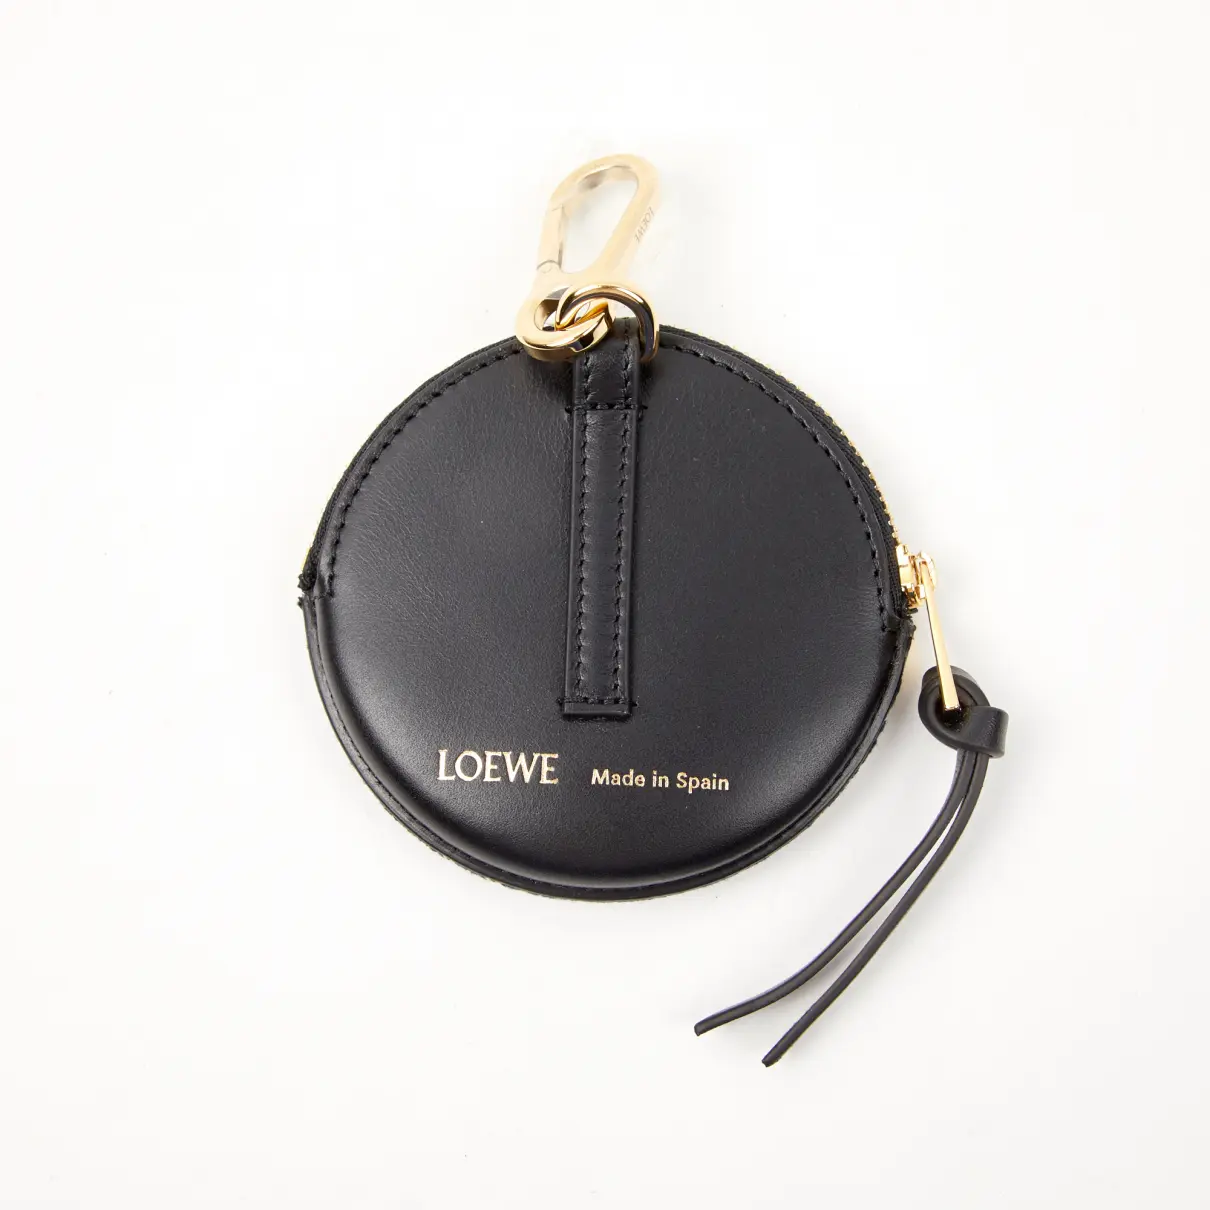 Buy Loewe Cloth bag charm online